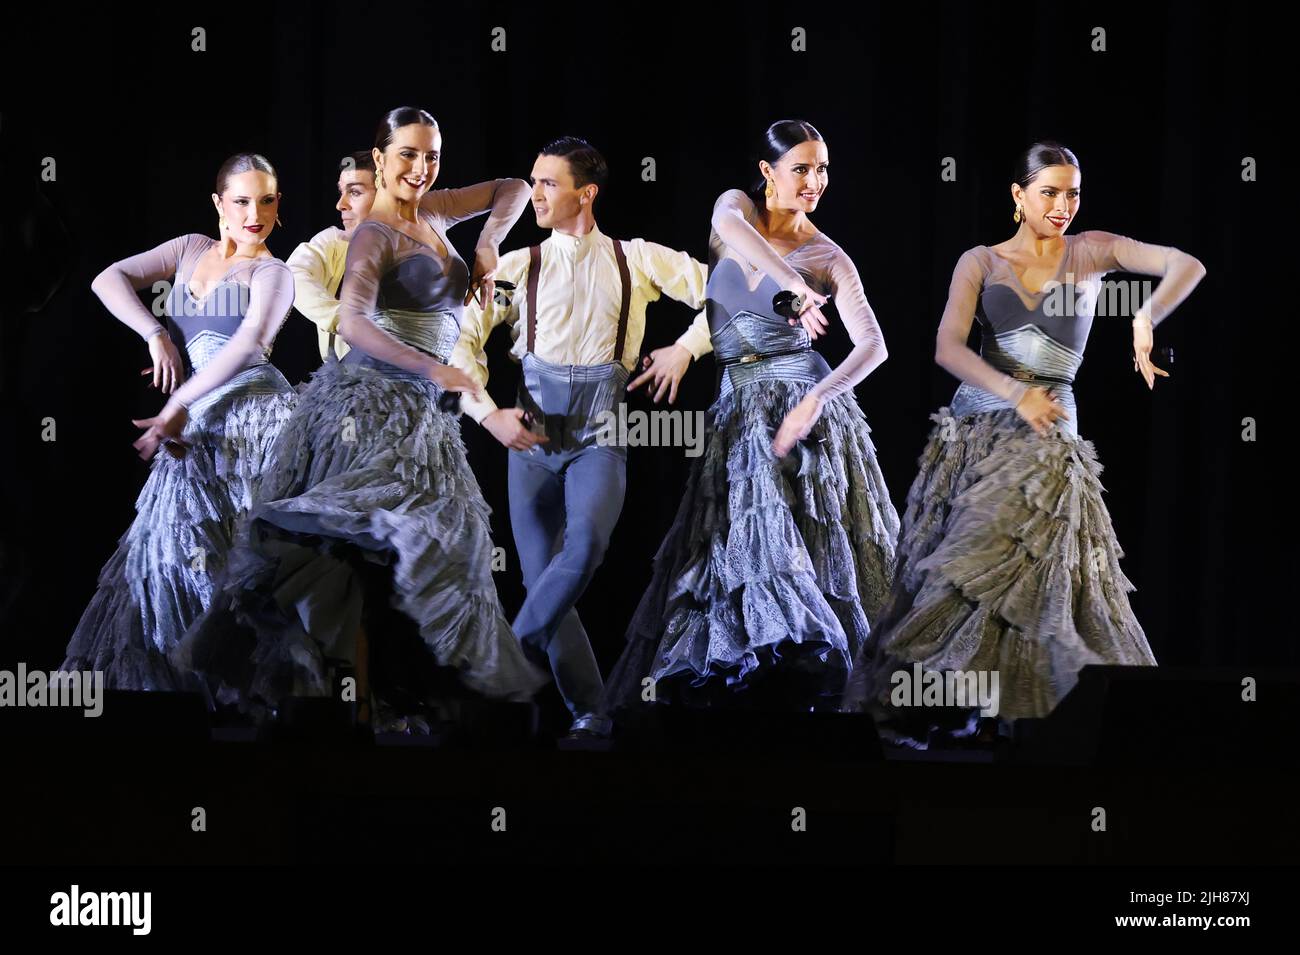 Flamenco, Andalusien, Ballett, Folklore, Dubai Expo, Erotik,  Spanische Tänzer und Tänzerin beim Flamenco voller Anmut und Grazie und Leidenschaft Stock Photo